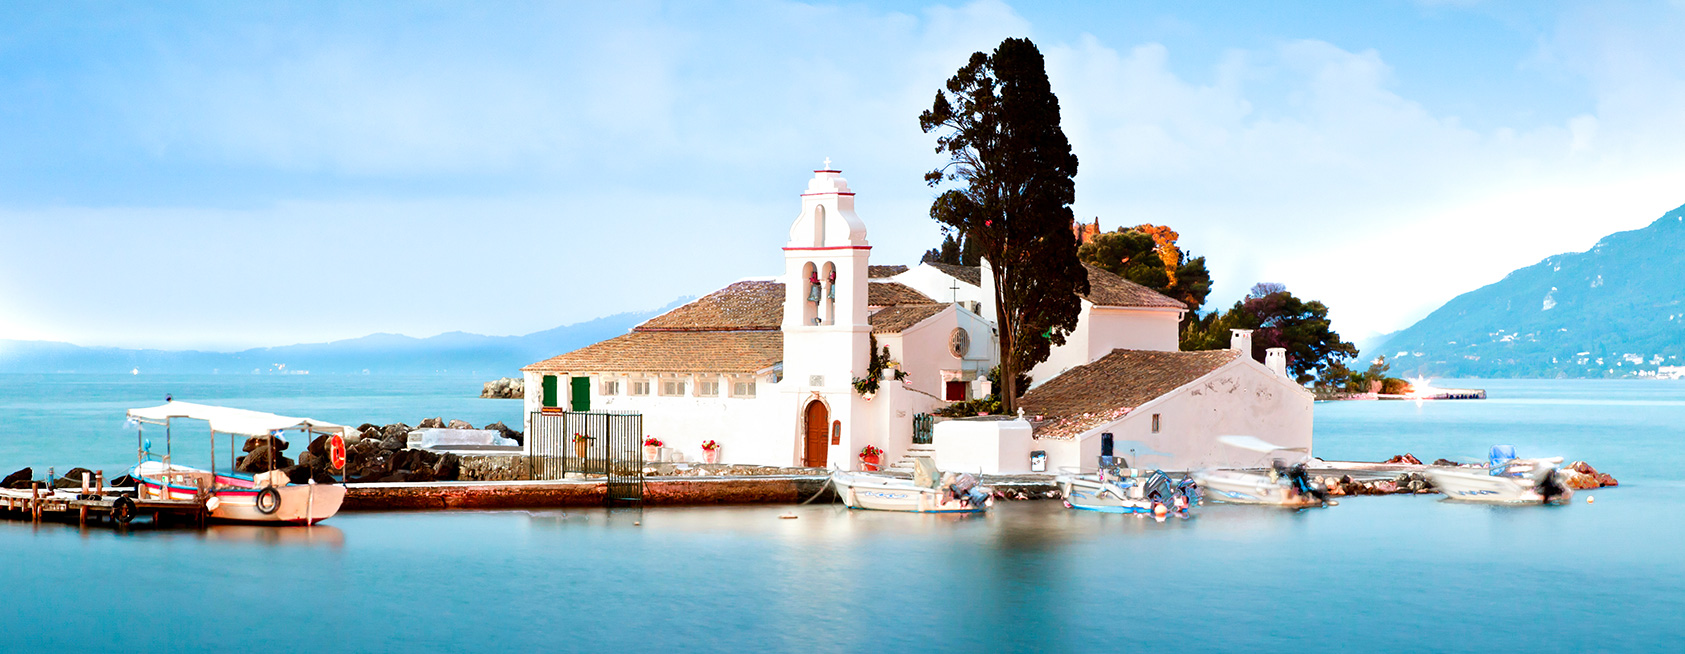 Kloster am Hafen auf der griechischen Insel Korfu